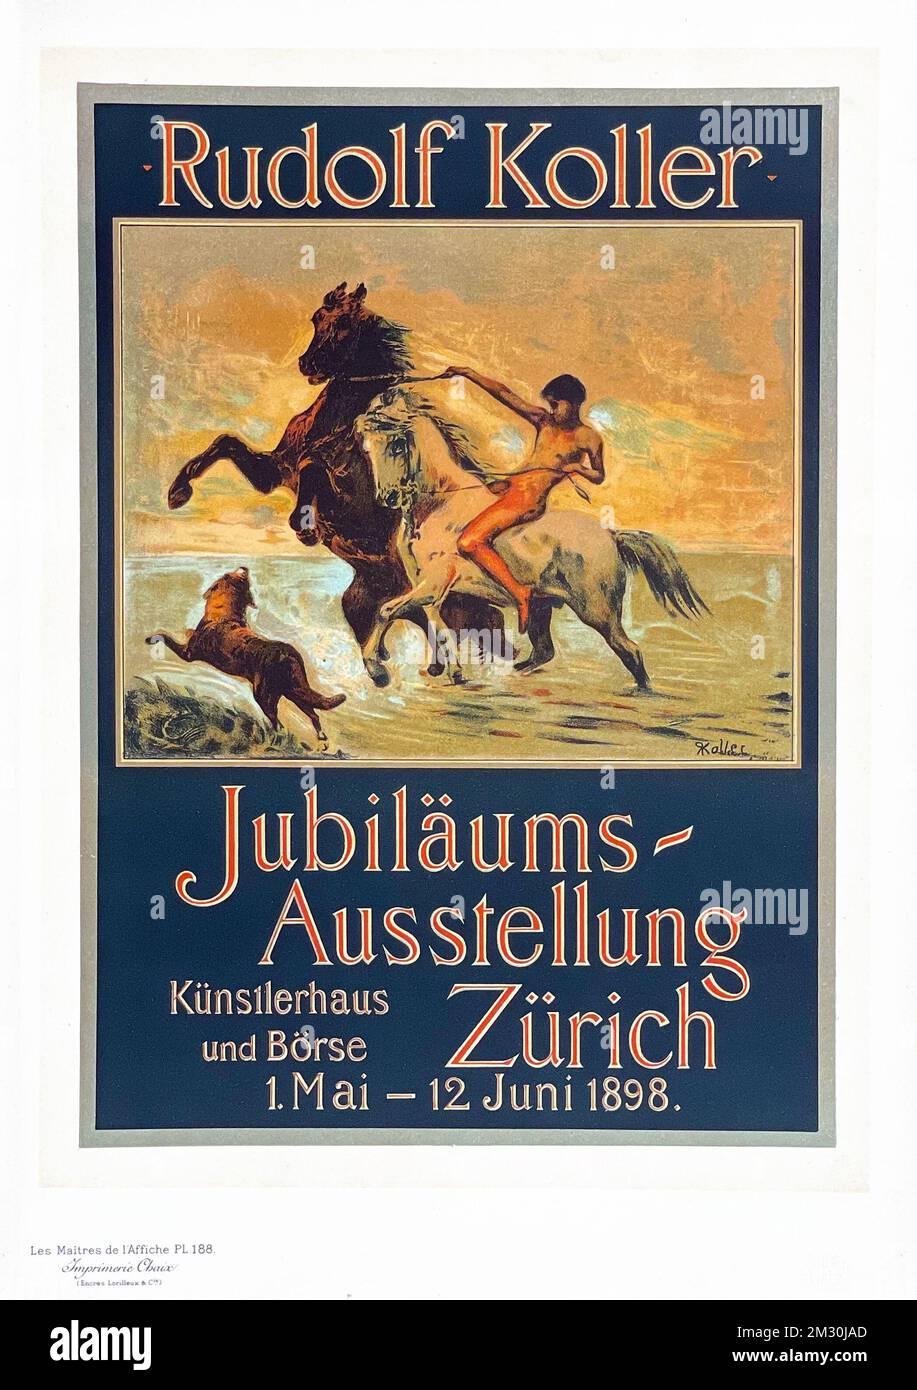 Vintage poster - Maitres Affiches by Koller - Jubilaums Ausstellung Zürich, Künstlerhaus und Börse. 1898. Plate 188. Rudolf Koller (1828-1905) Stock Photo